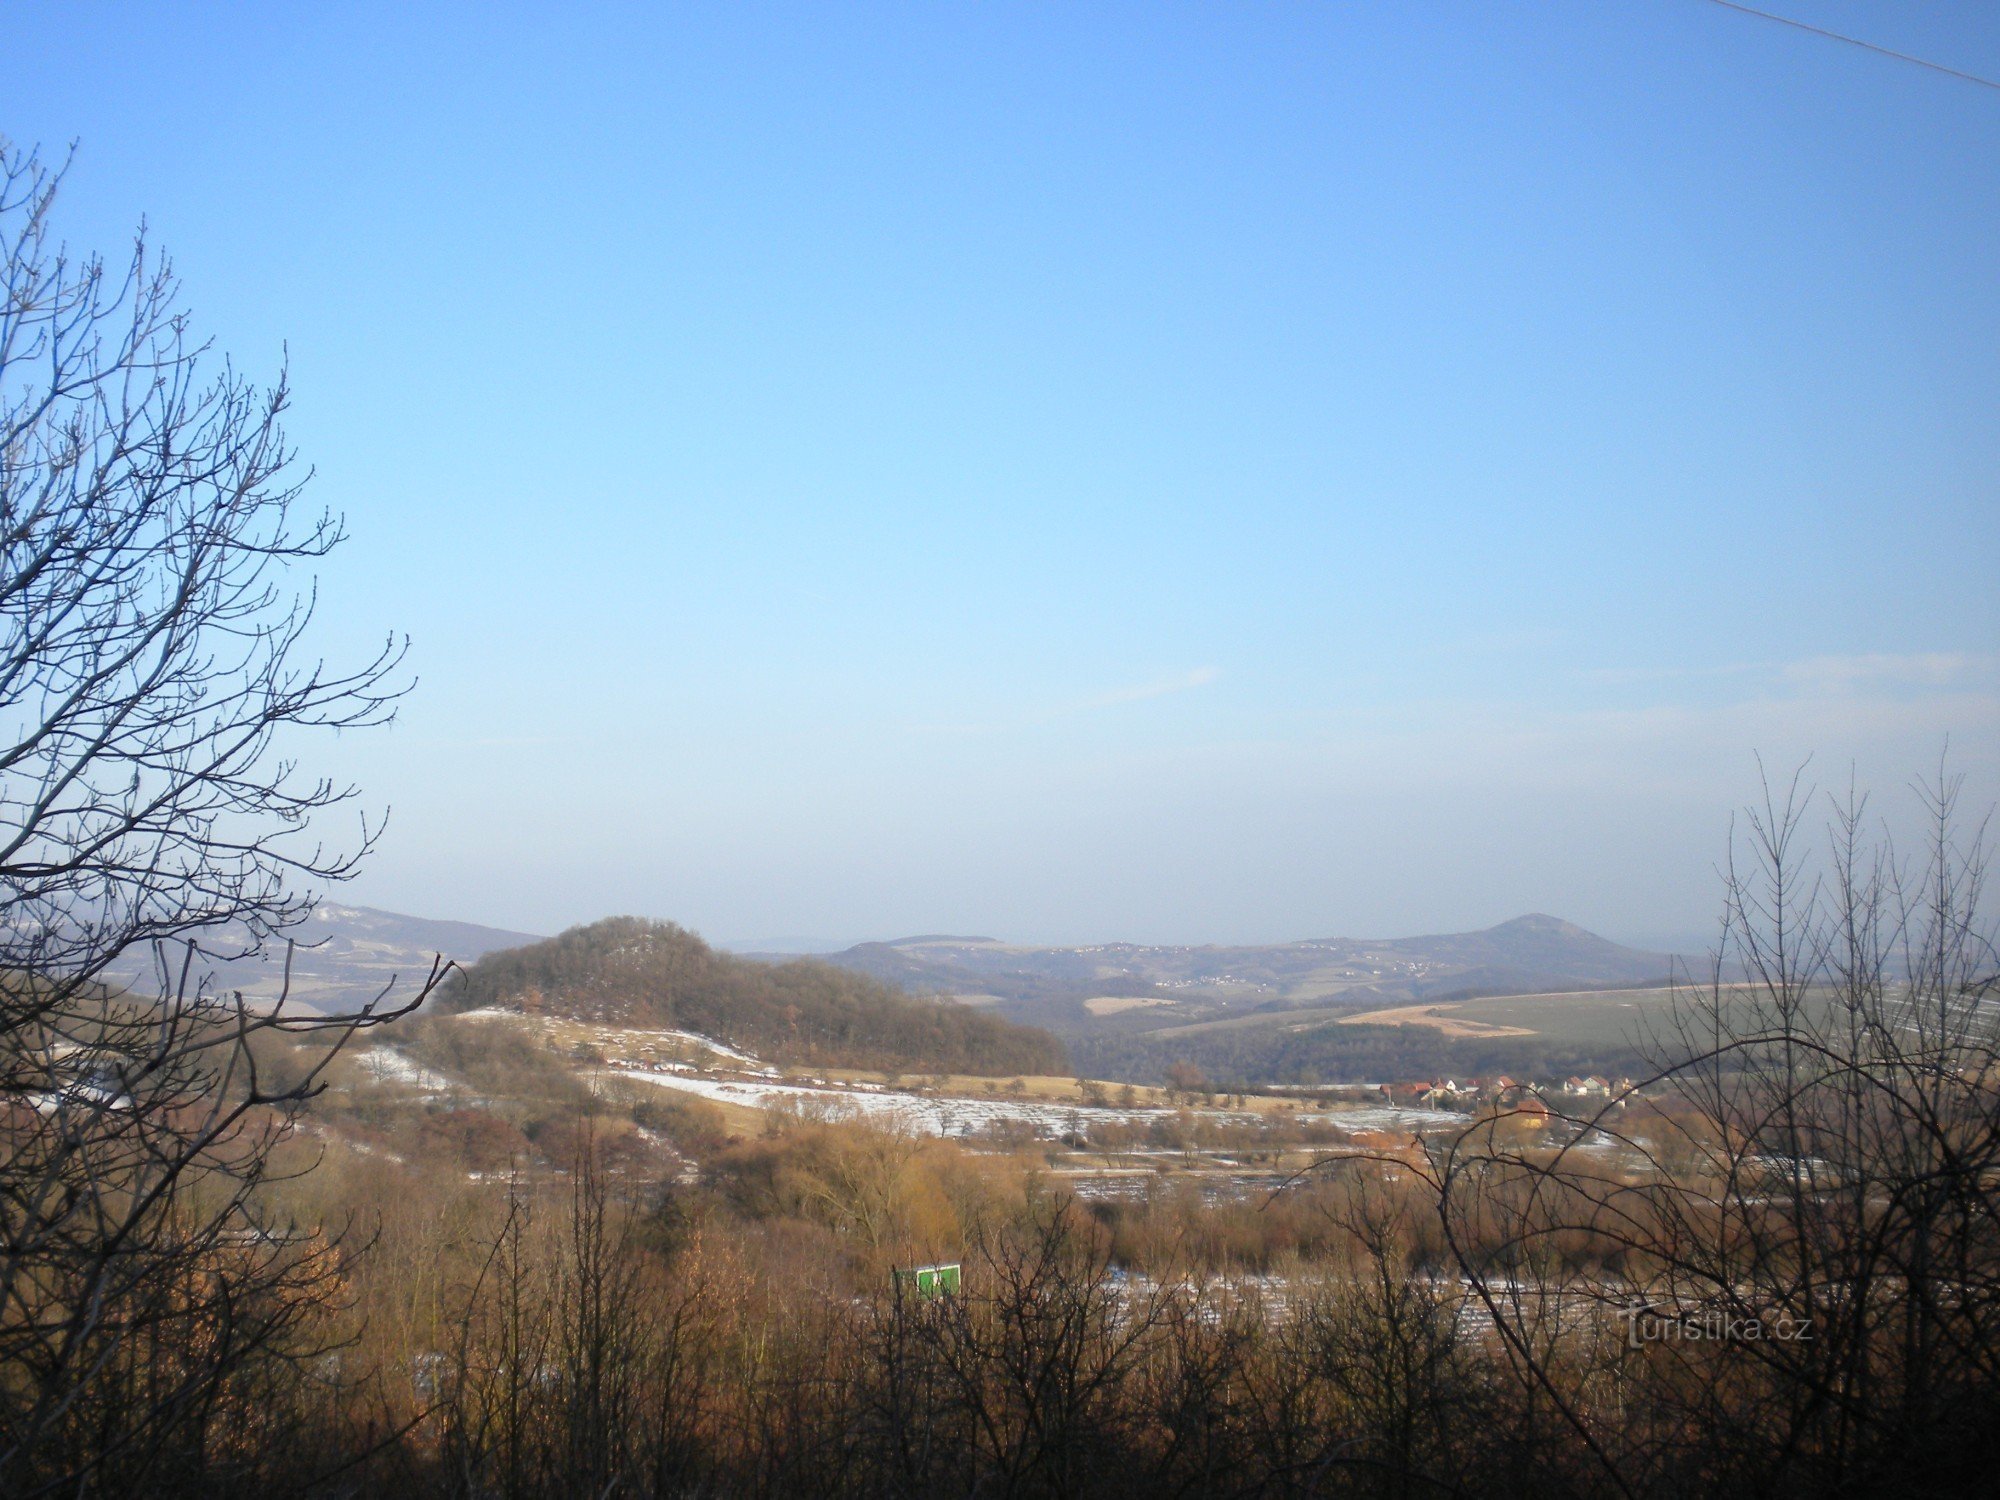 Ο λόφος Srna είναι πιο κοντά, το Radobyl σε απόσταση στα δεξιά.